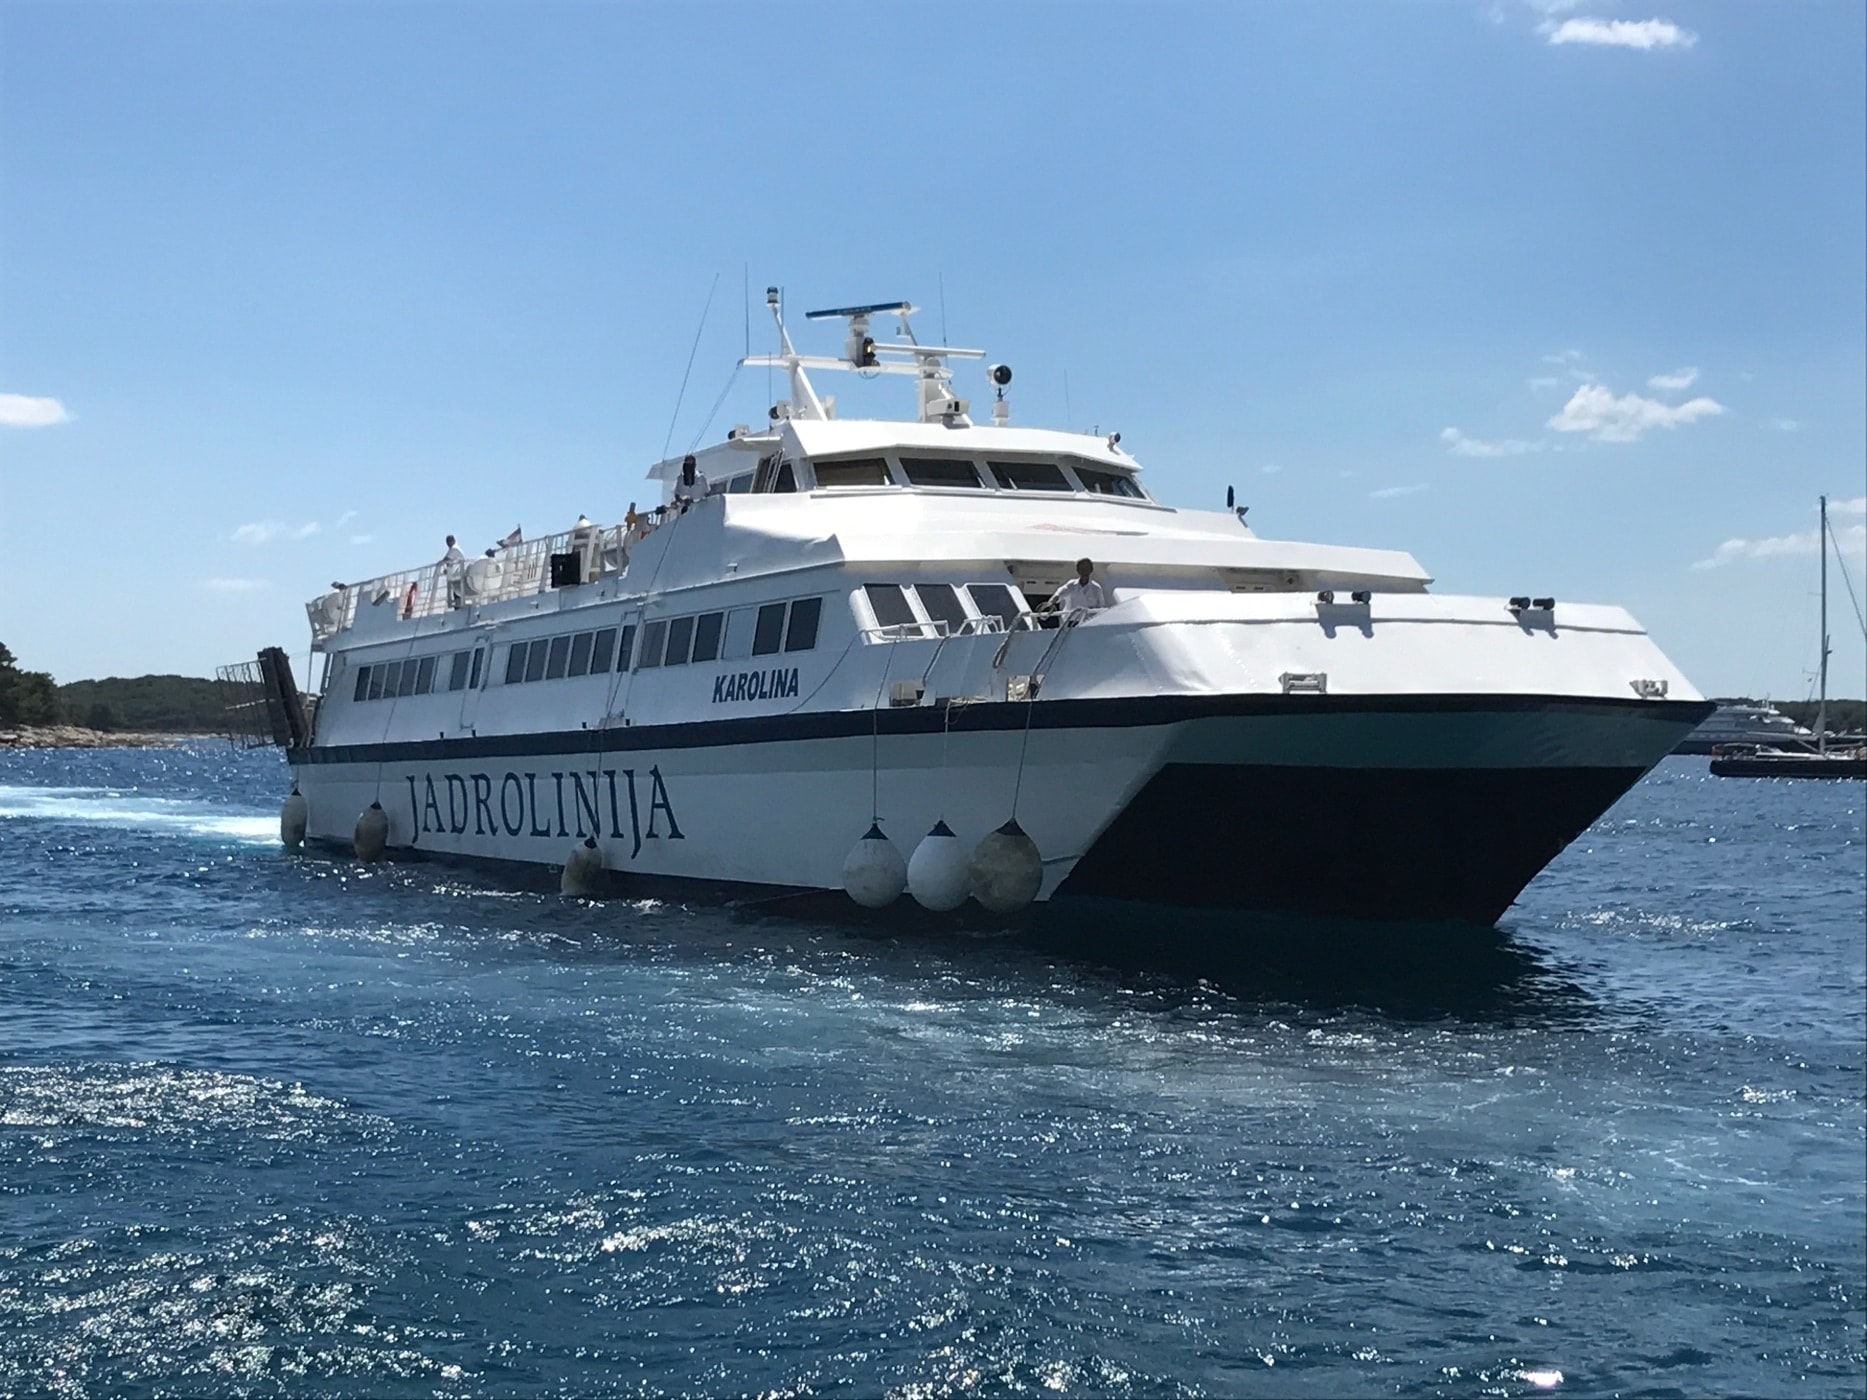 Taking the catamaran from Hvar to Split